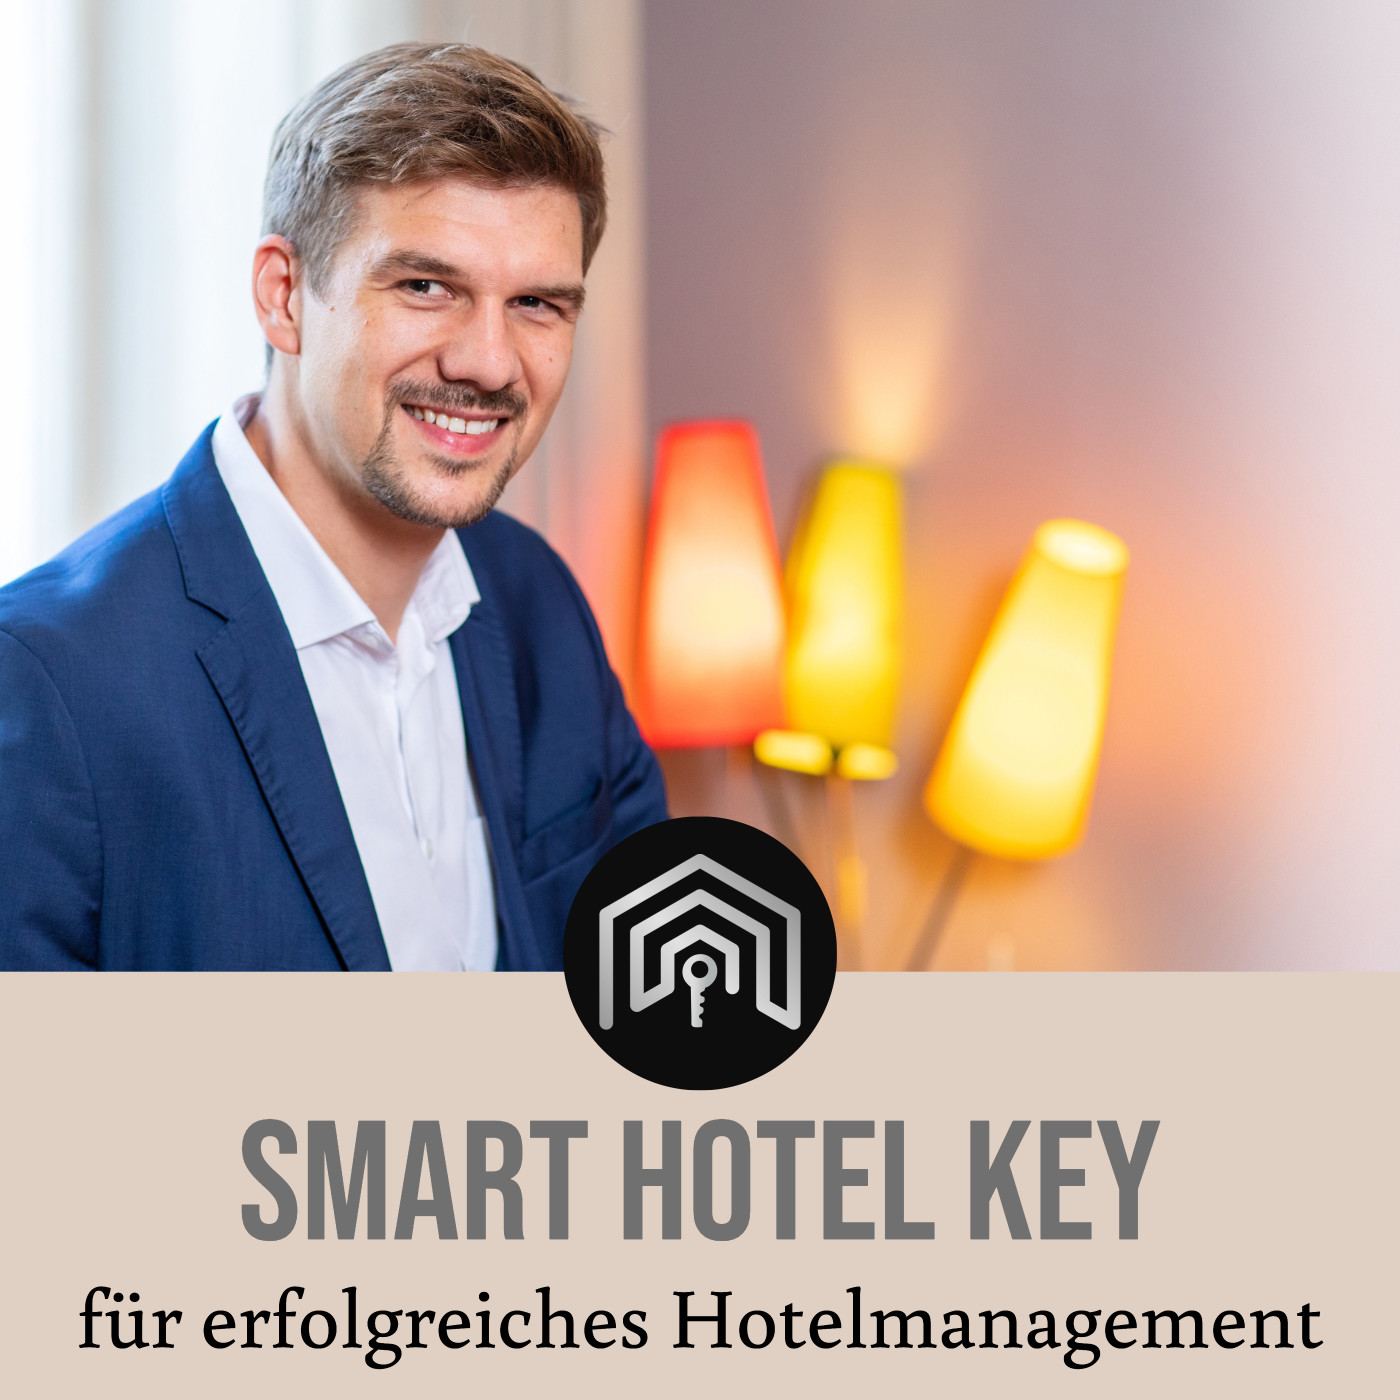 Smart Hotel Key, dein Podcast für erfolgreiches Hotelmanagement